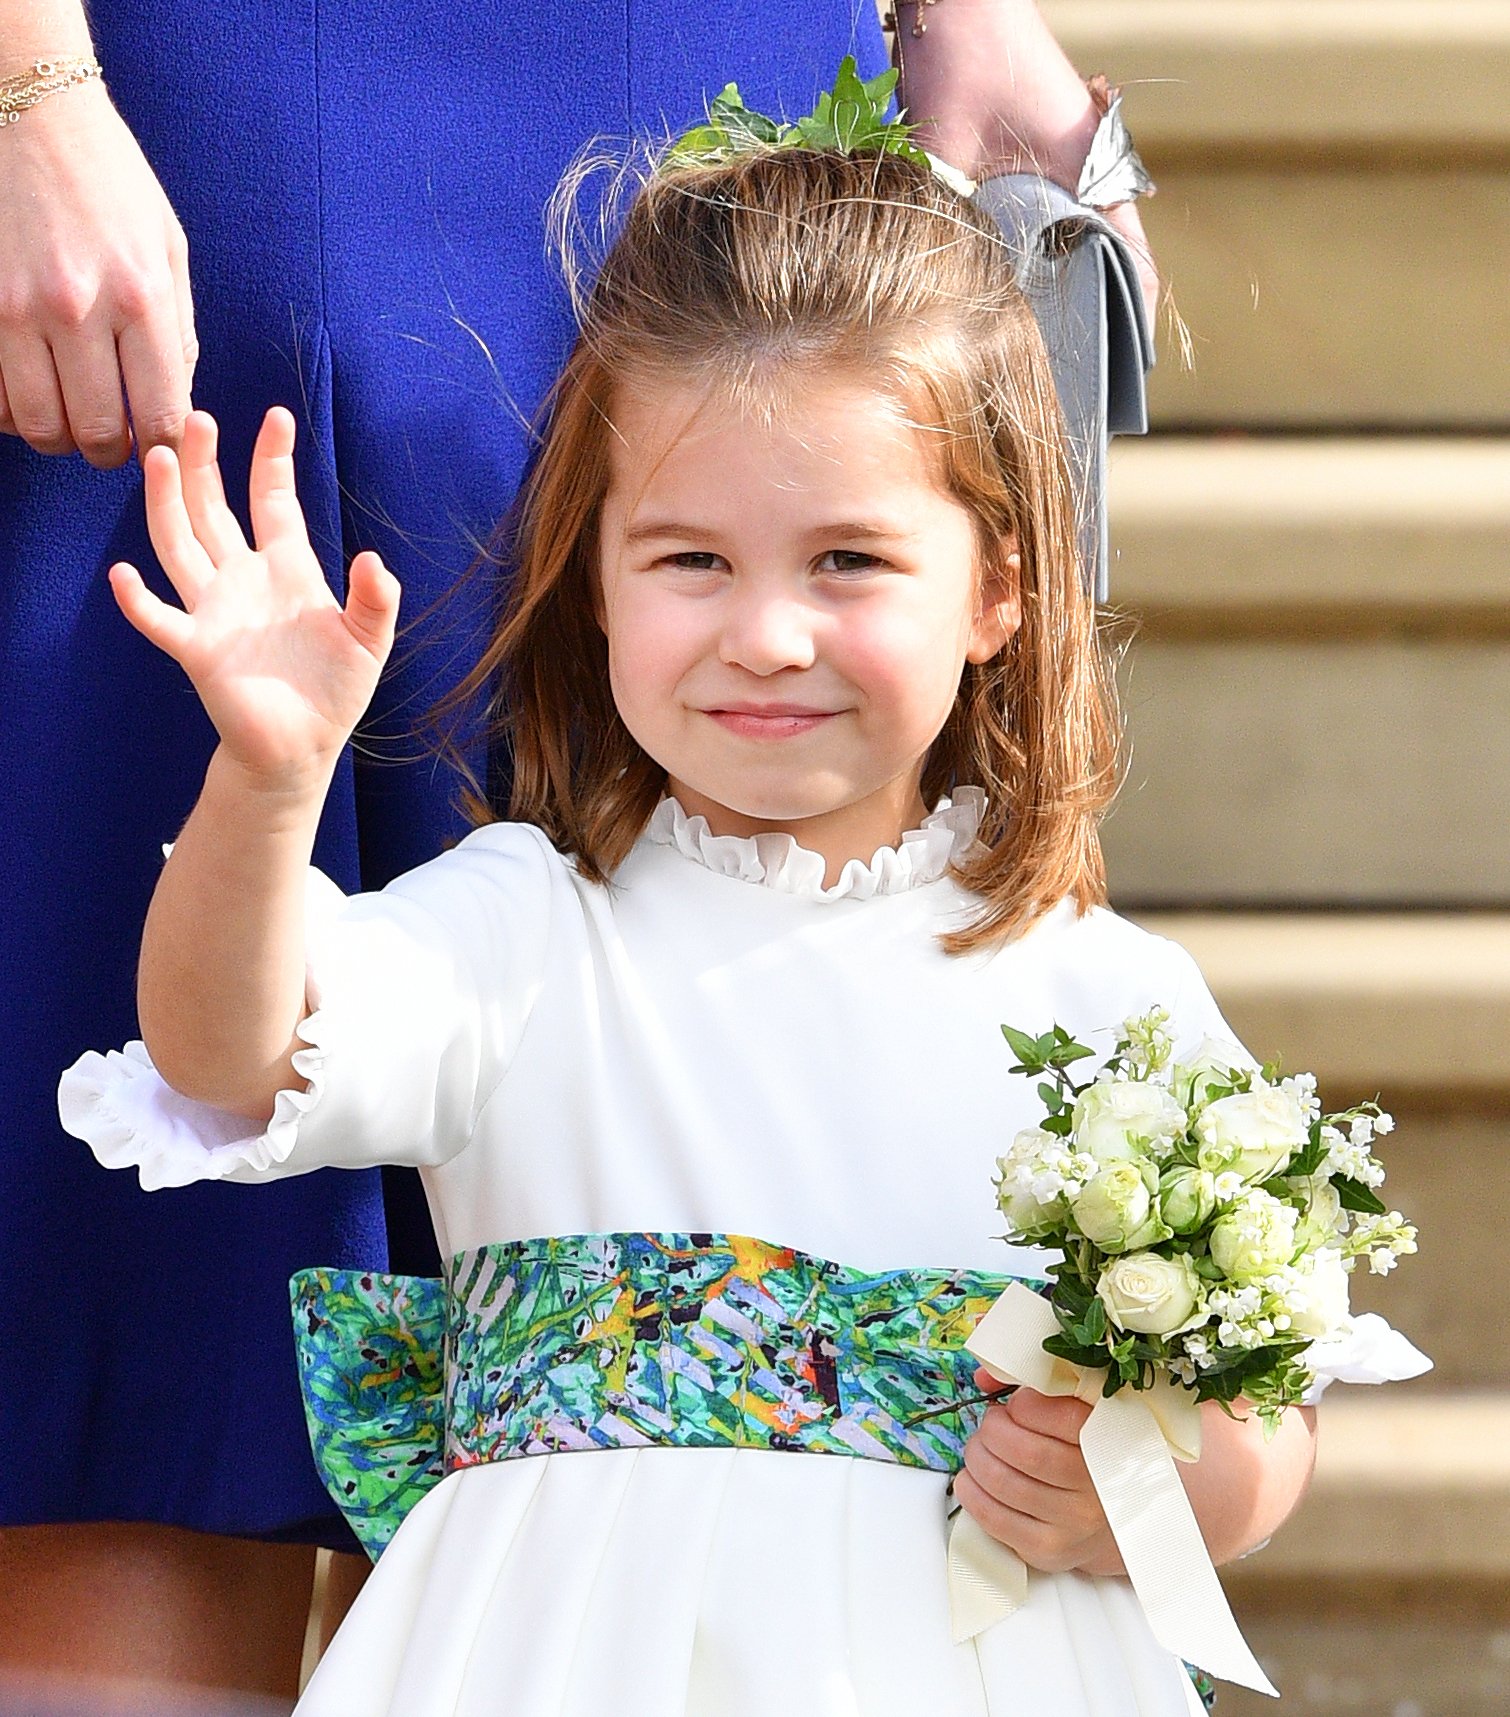 La princesse Charlotte photographiée lors du mariage de la princesse Eugénie d'York et de Jack Brooksbank à la chapelle St George, 2018, Angleterre. | Photo : Getty Images